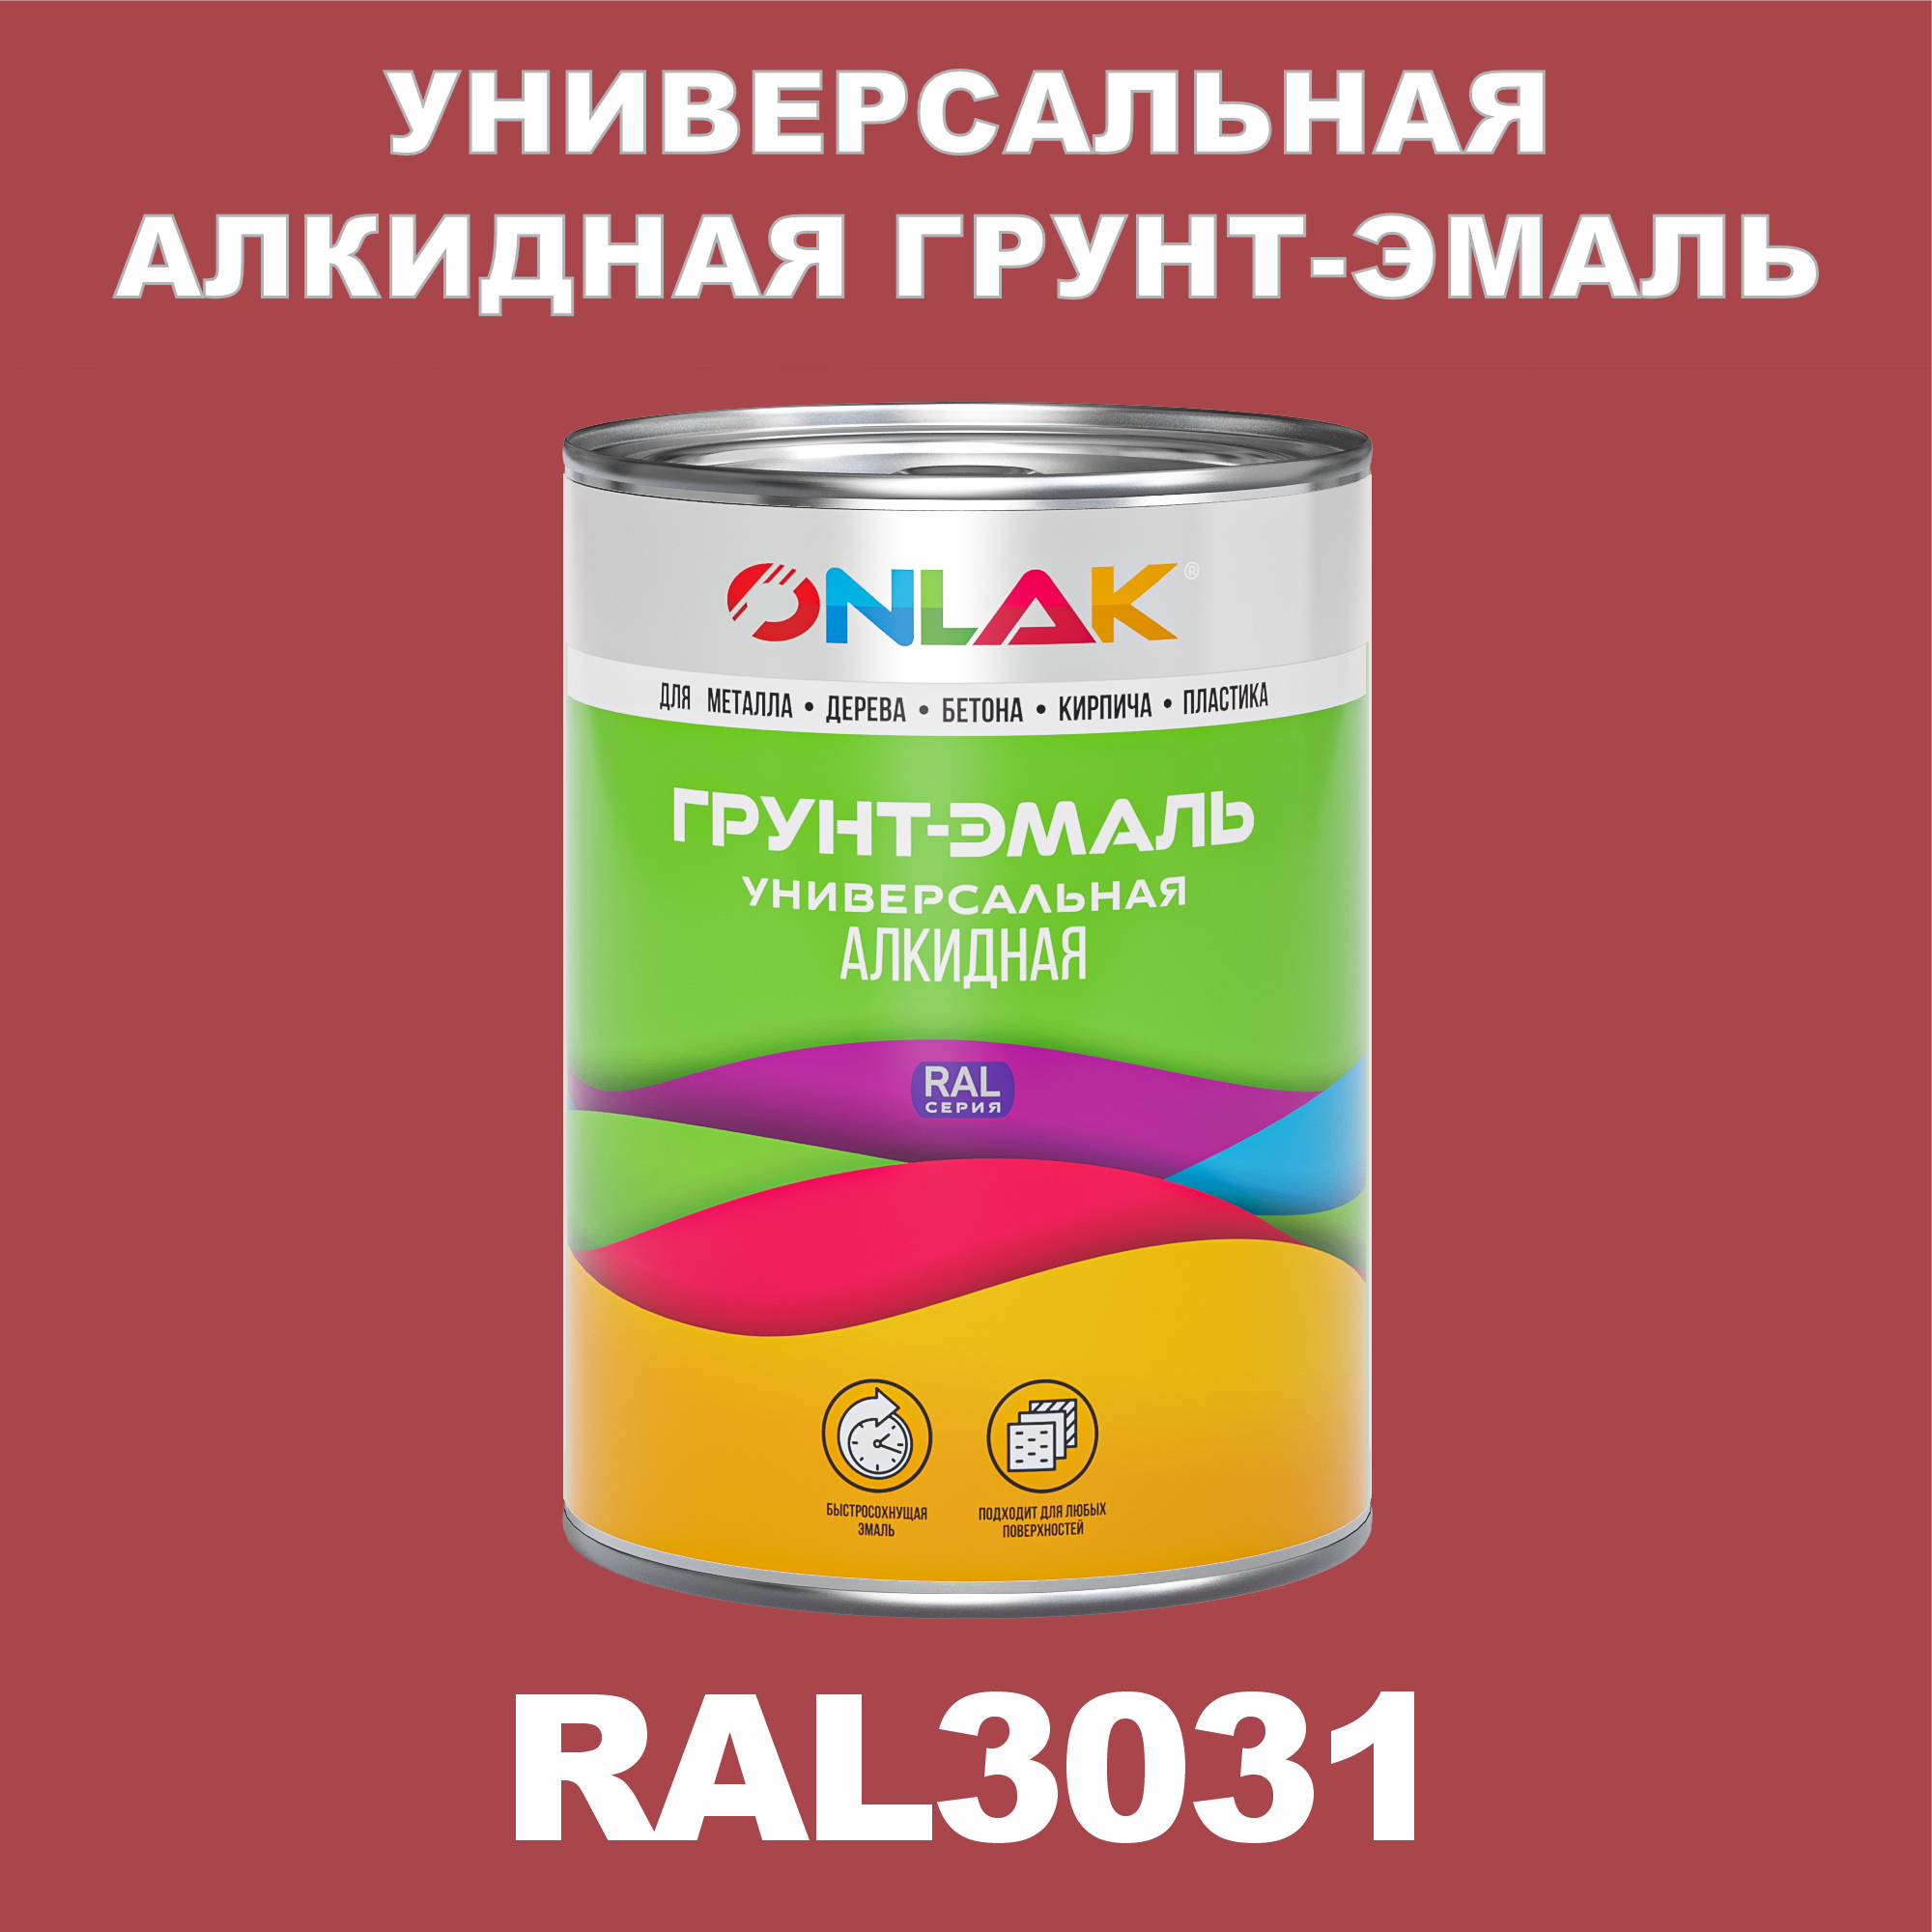 Грунт-эмаль ONLAK 1К RAL3031 антикоррозионная алкидная по металлу по ржавчине 1 кг